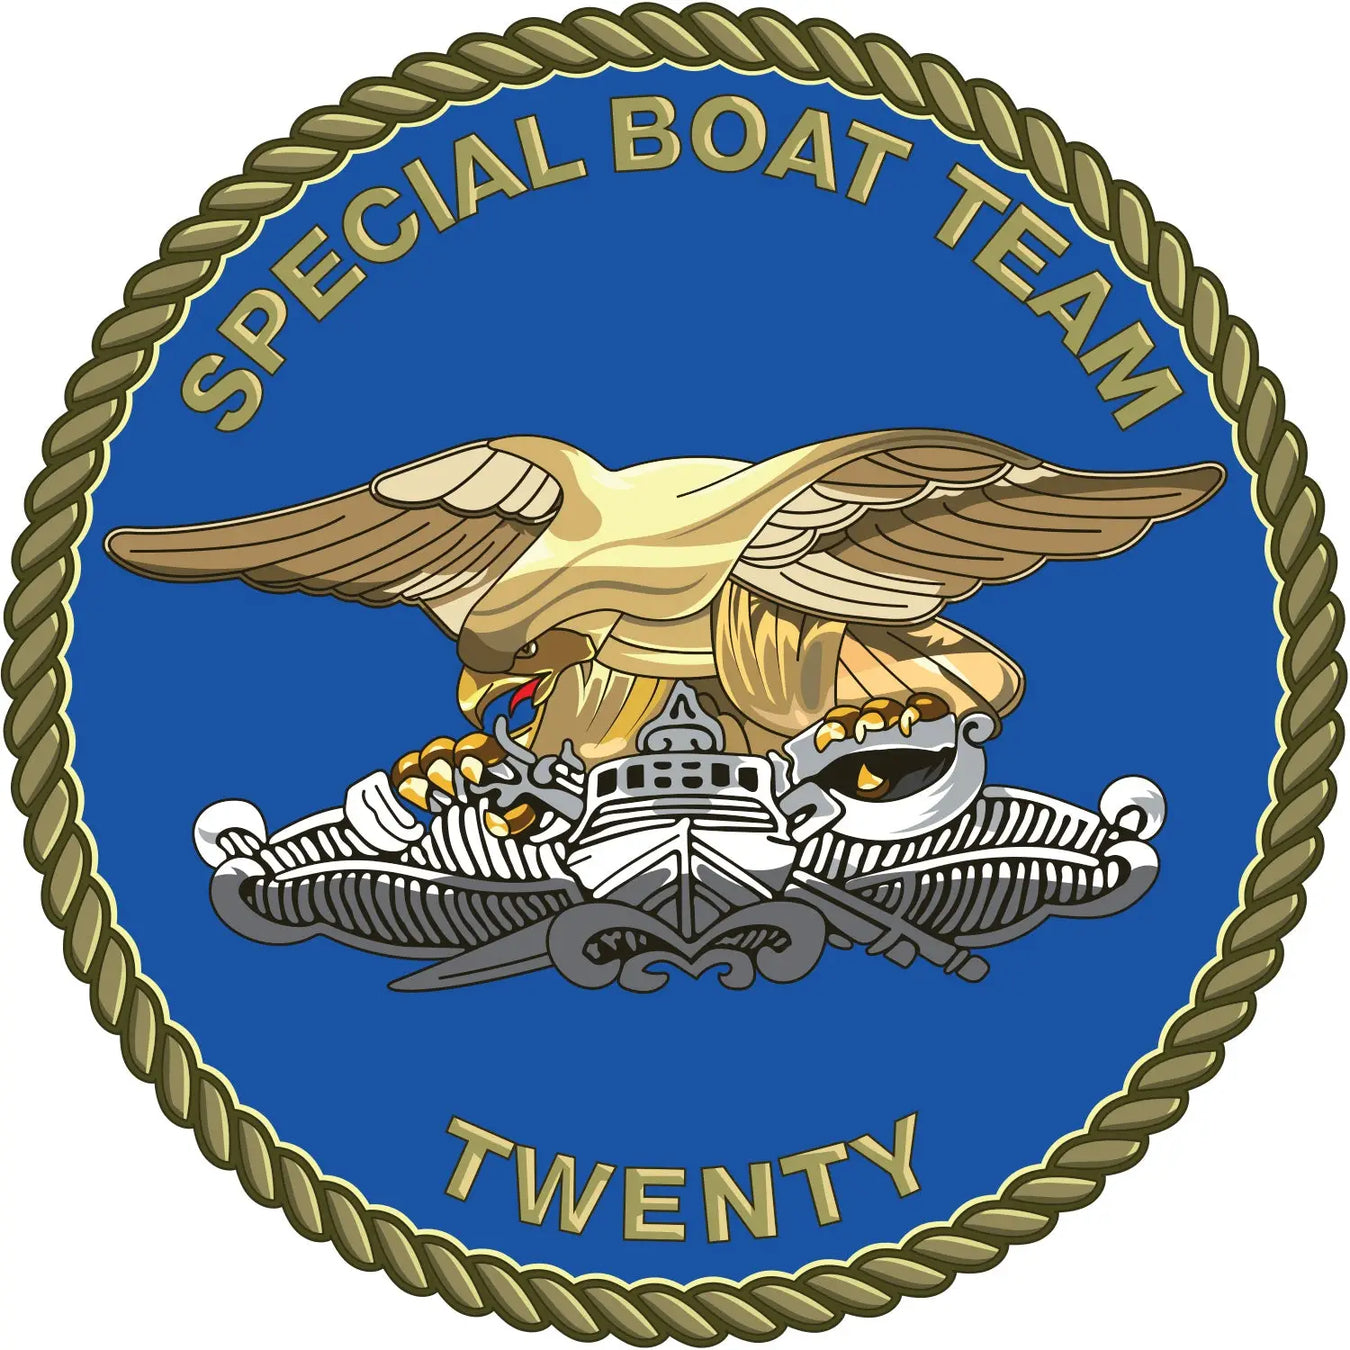 Special Boat Team 20 (SBT-20)